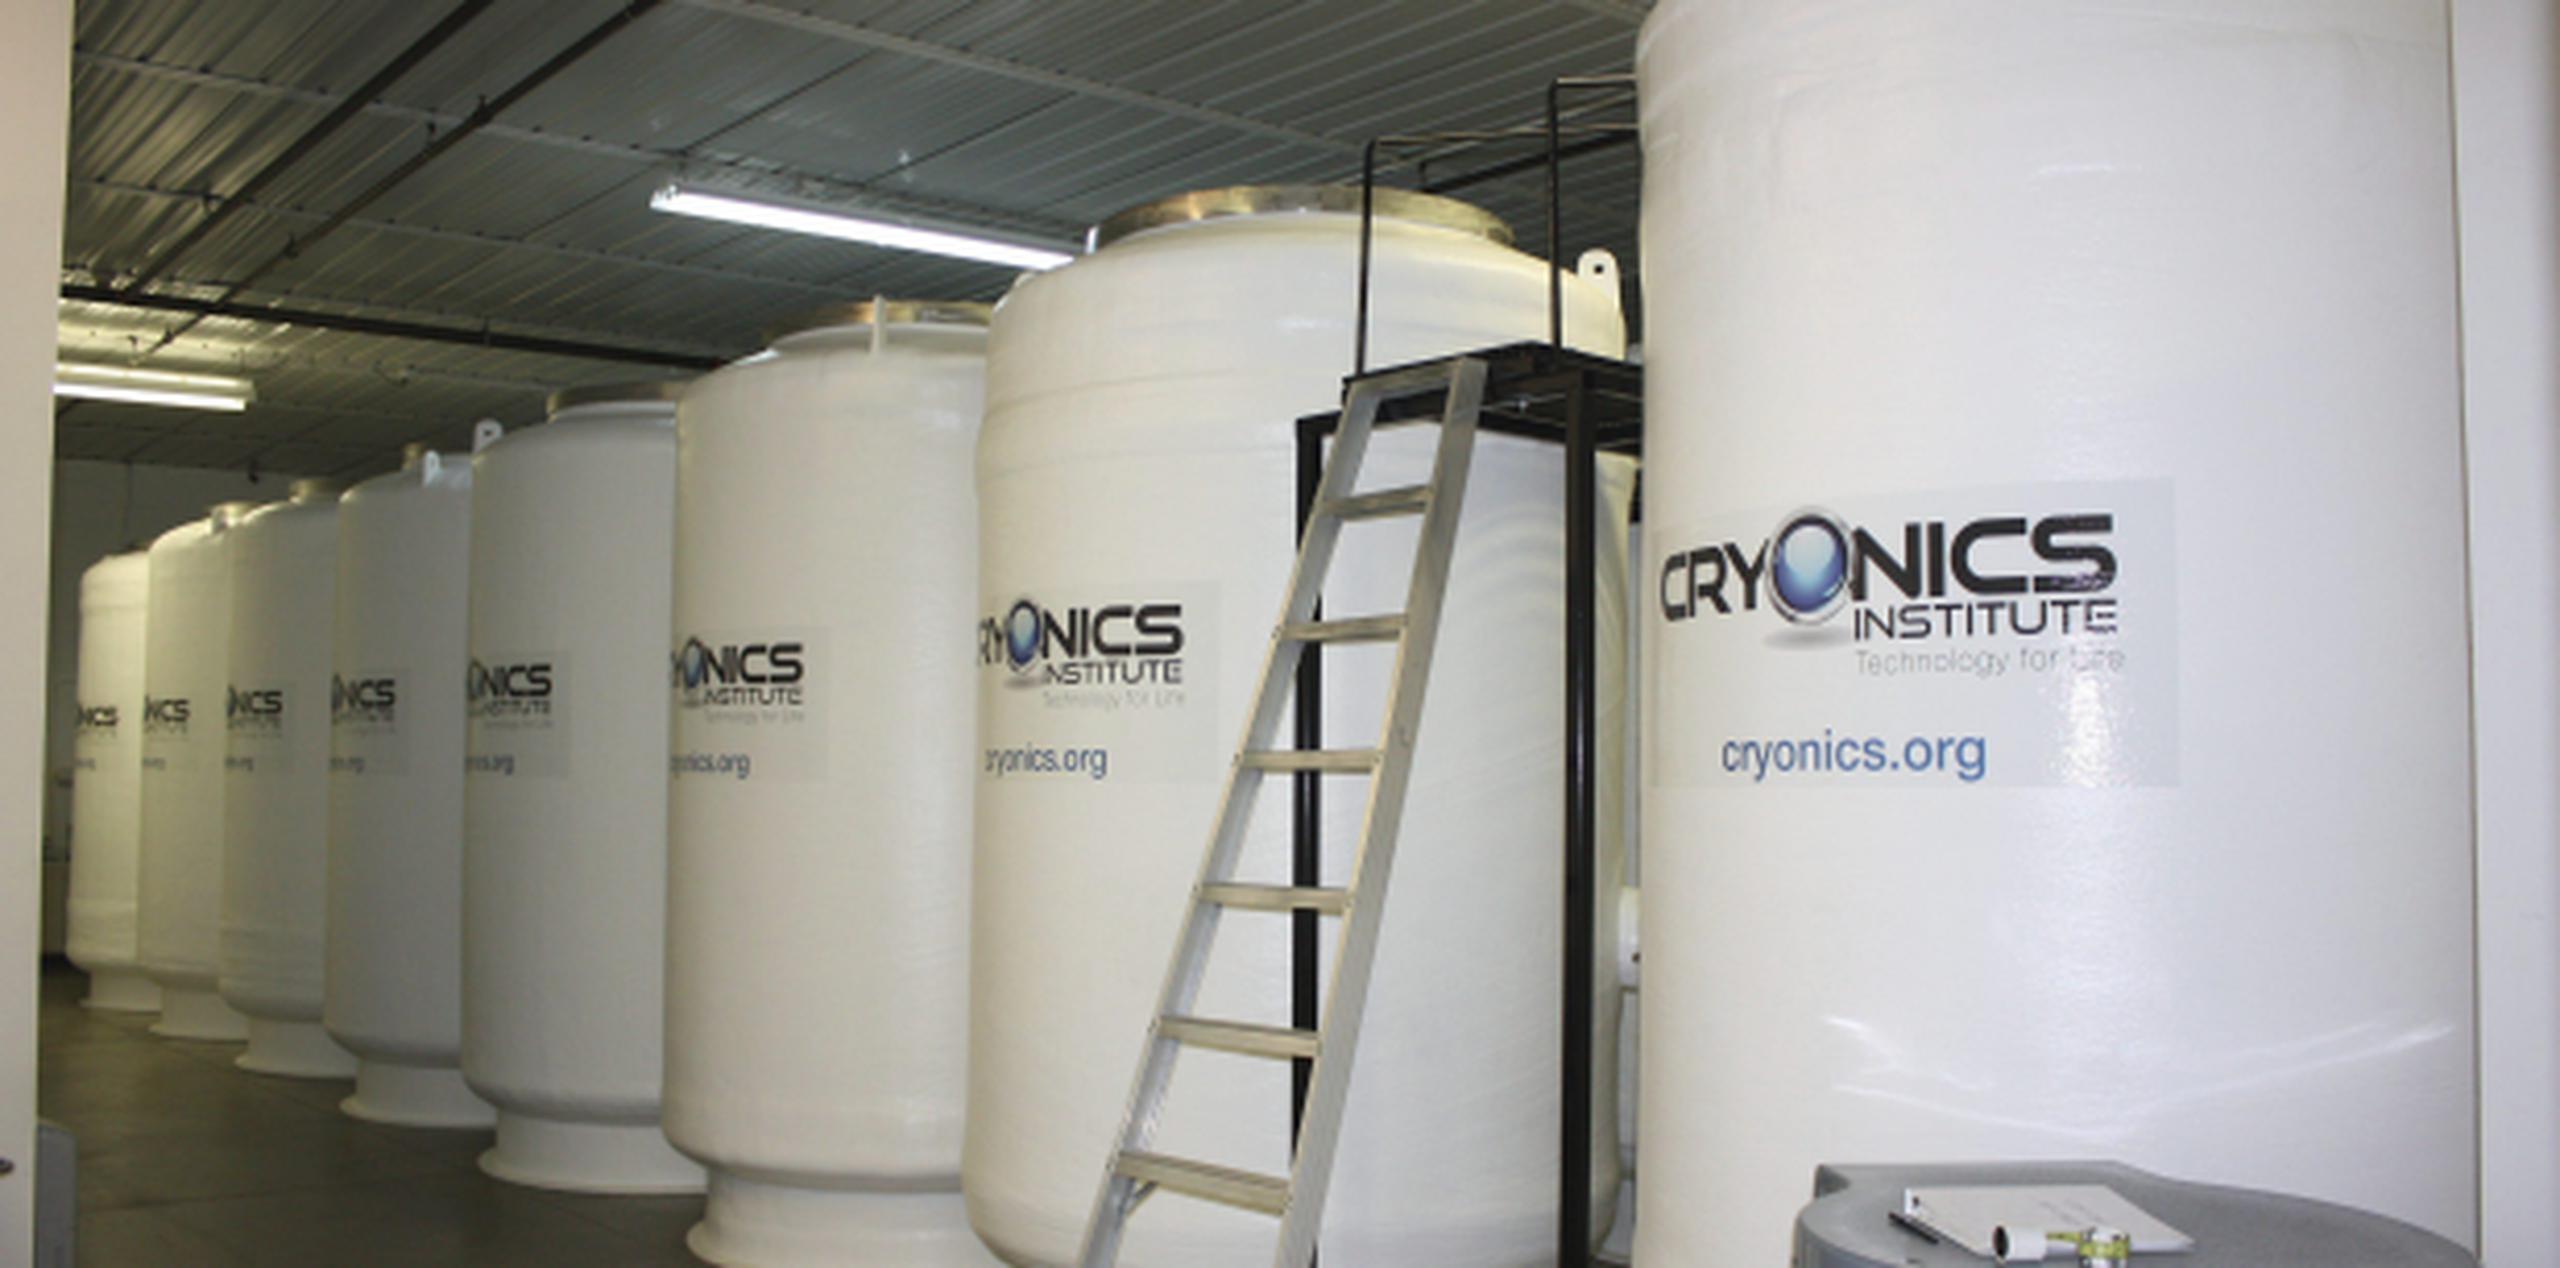 El Instituto Cryonics, localizado en Michigan, es uno de los lugares donde se puede conservar un cuerpo humano a la de que pueda ser reanimado. (EFE/Cryionics Institute)